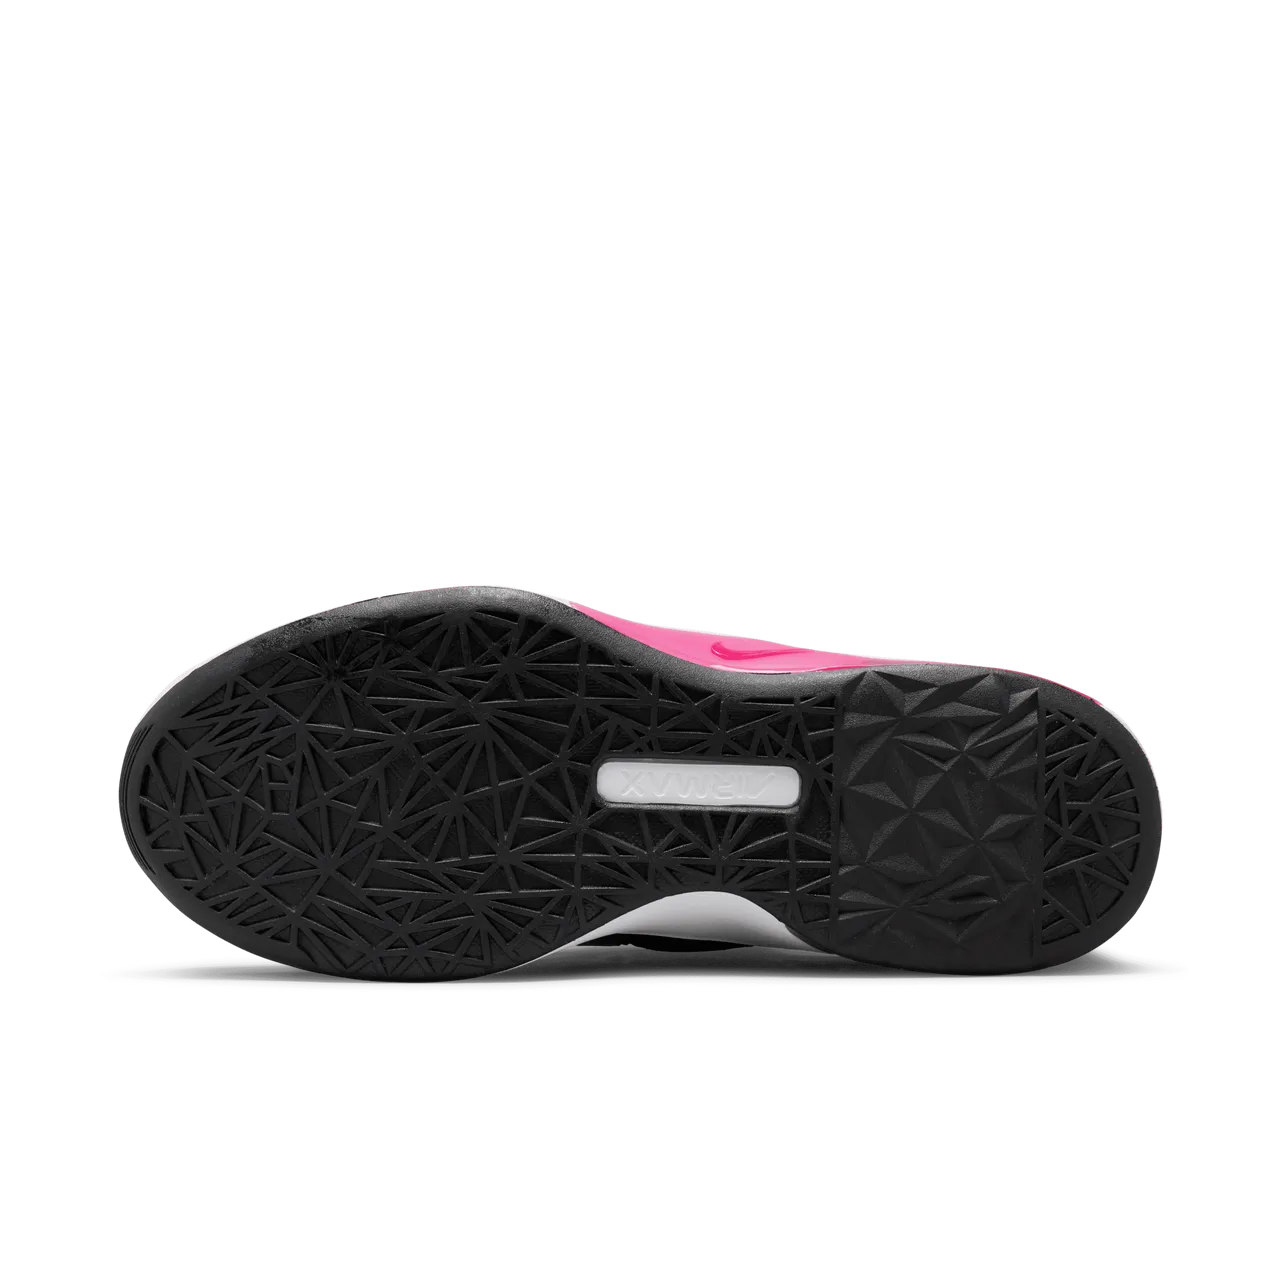 Nike Air Max Bella TR 5 work-outschoenen voor dames - Zwart